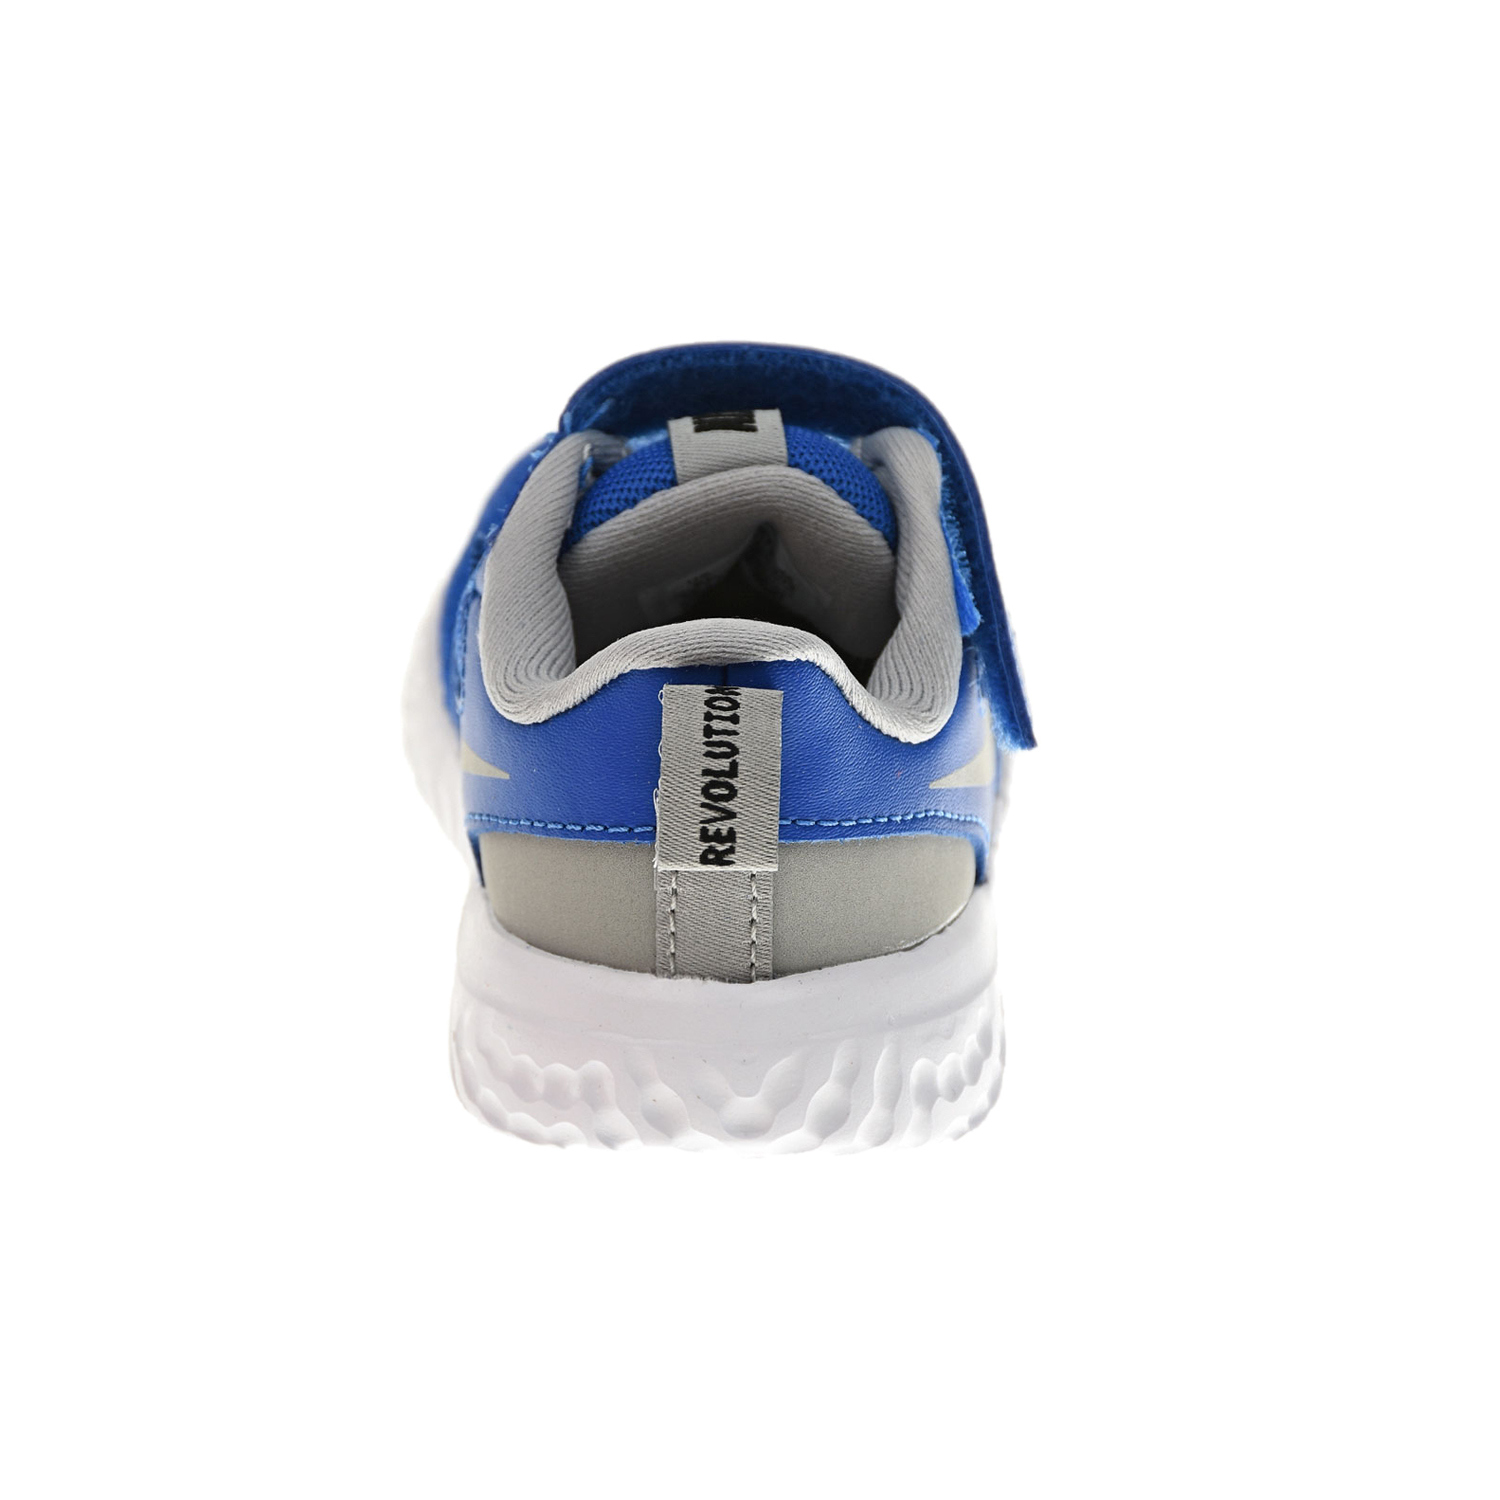 Синие кроссовки Revolution 5 Nike детские, размер 20, цвет синий - фото 3